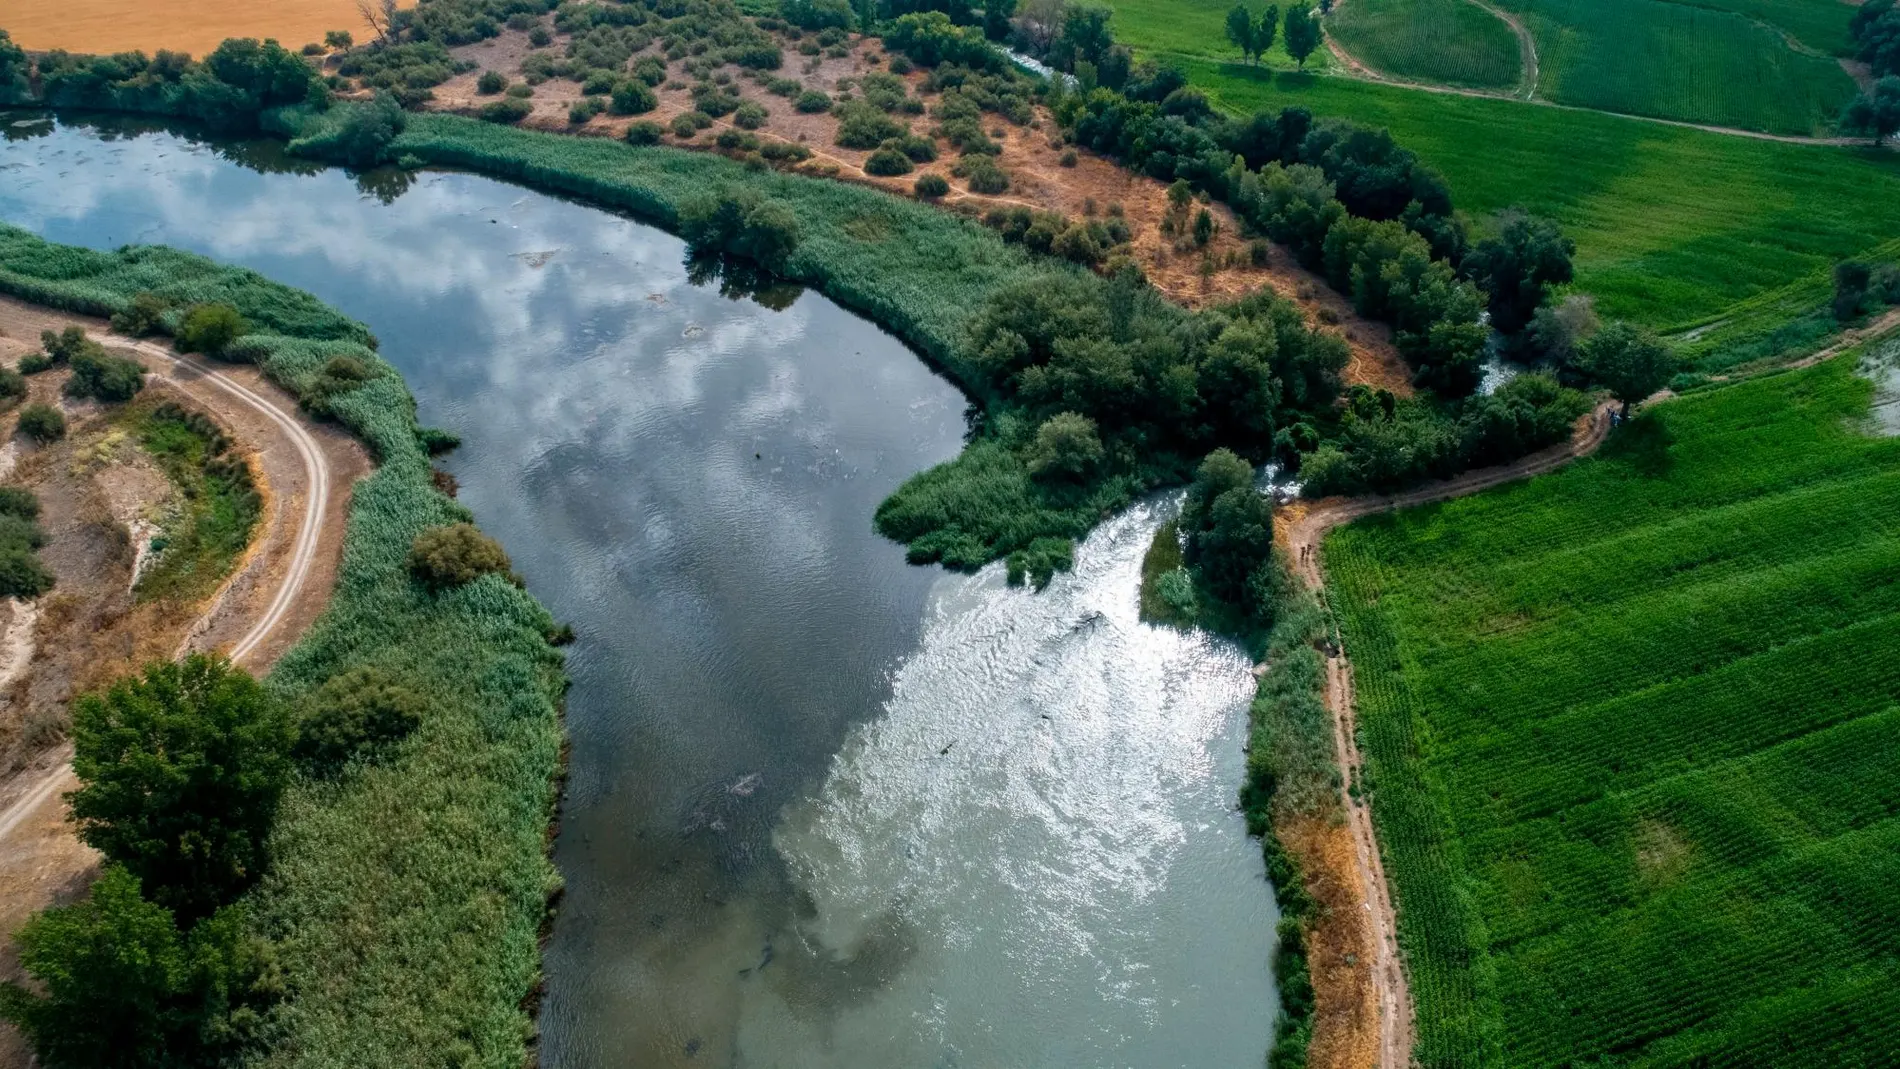 Imagen del río Jarama, que se encuentra en mal estado debido a la contaminación